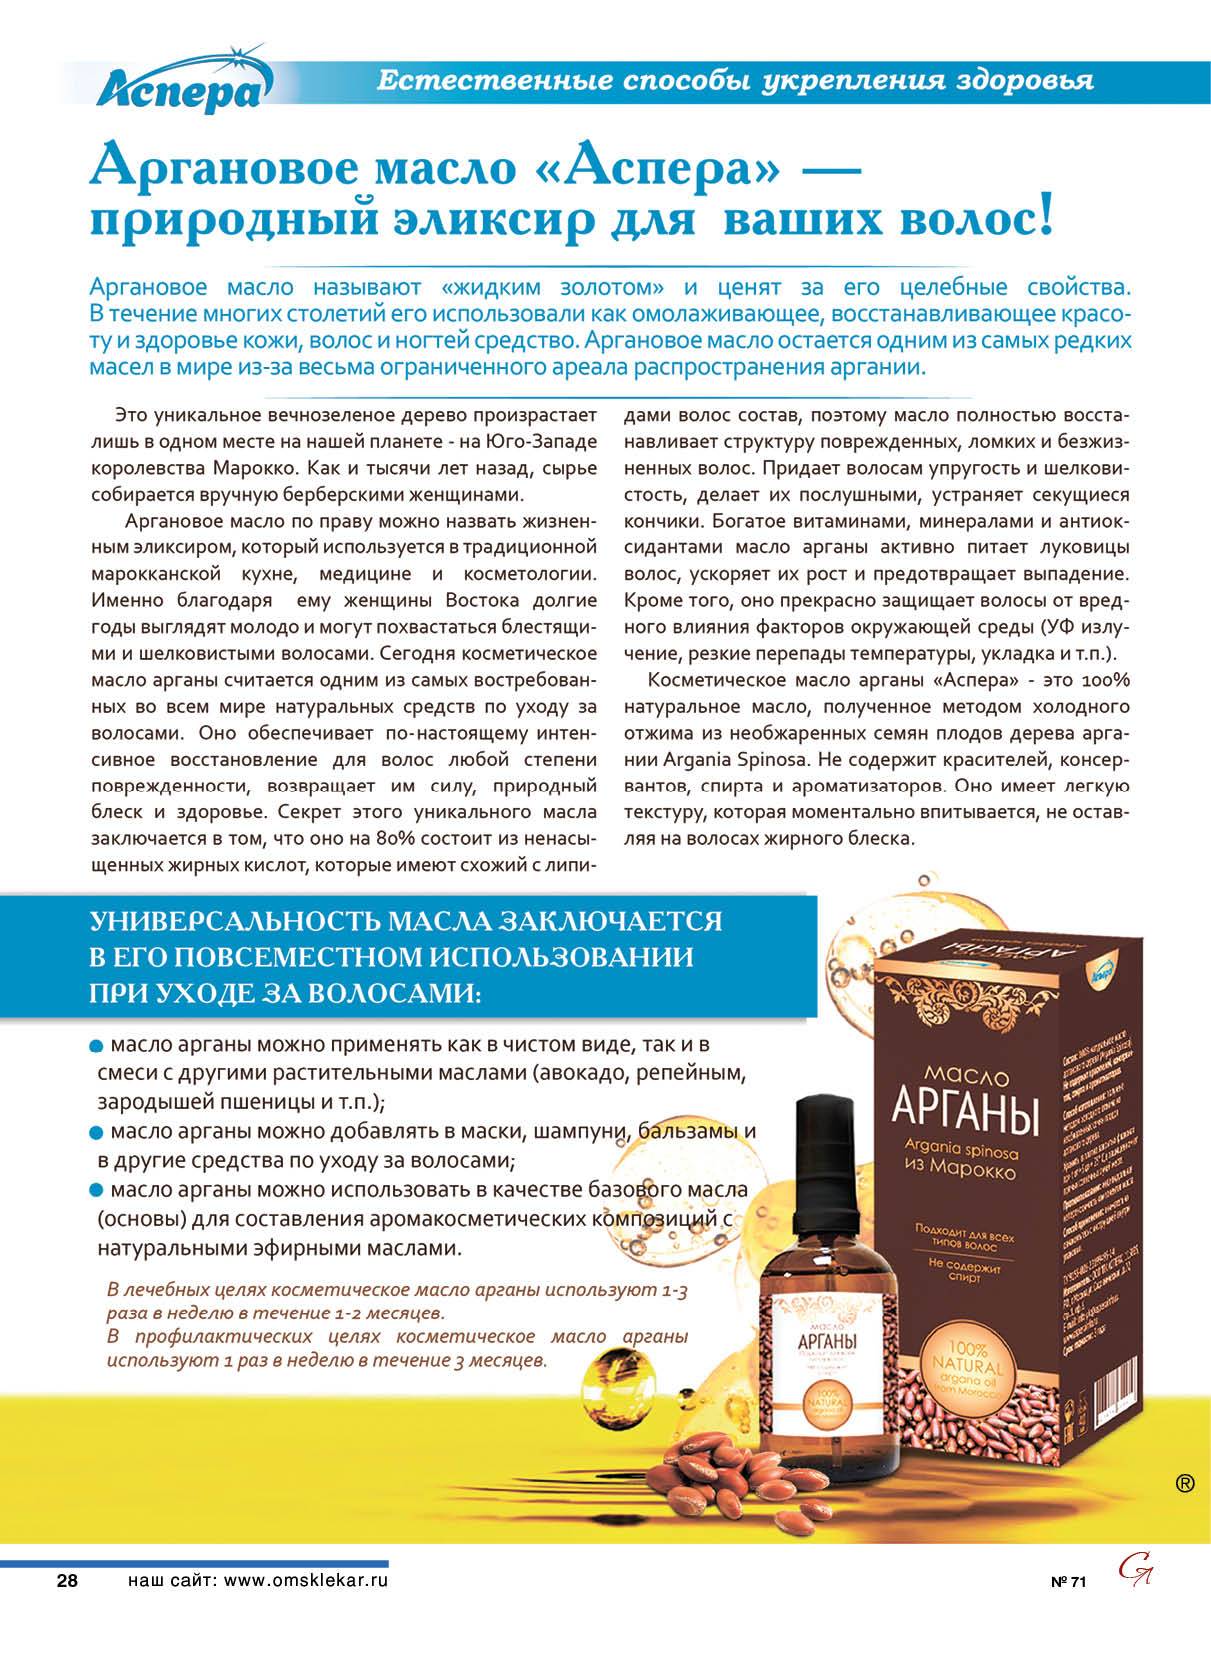 Масло арганы для лица, свойства и применение арганового косметического масла для кожи, для чего крем